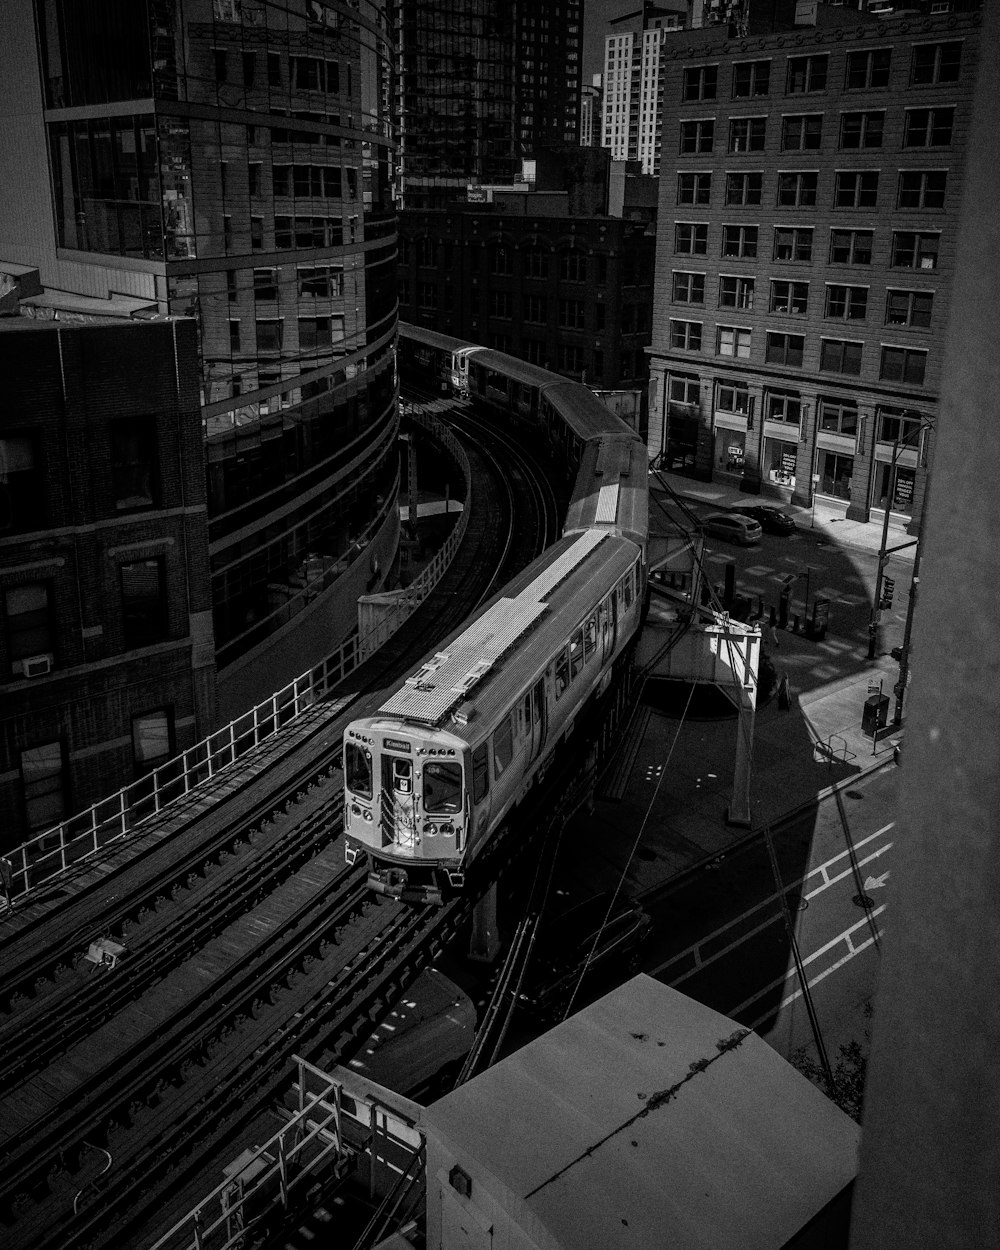 Une photo en noir et blanc d’un train dans une ville